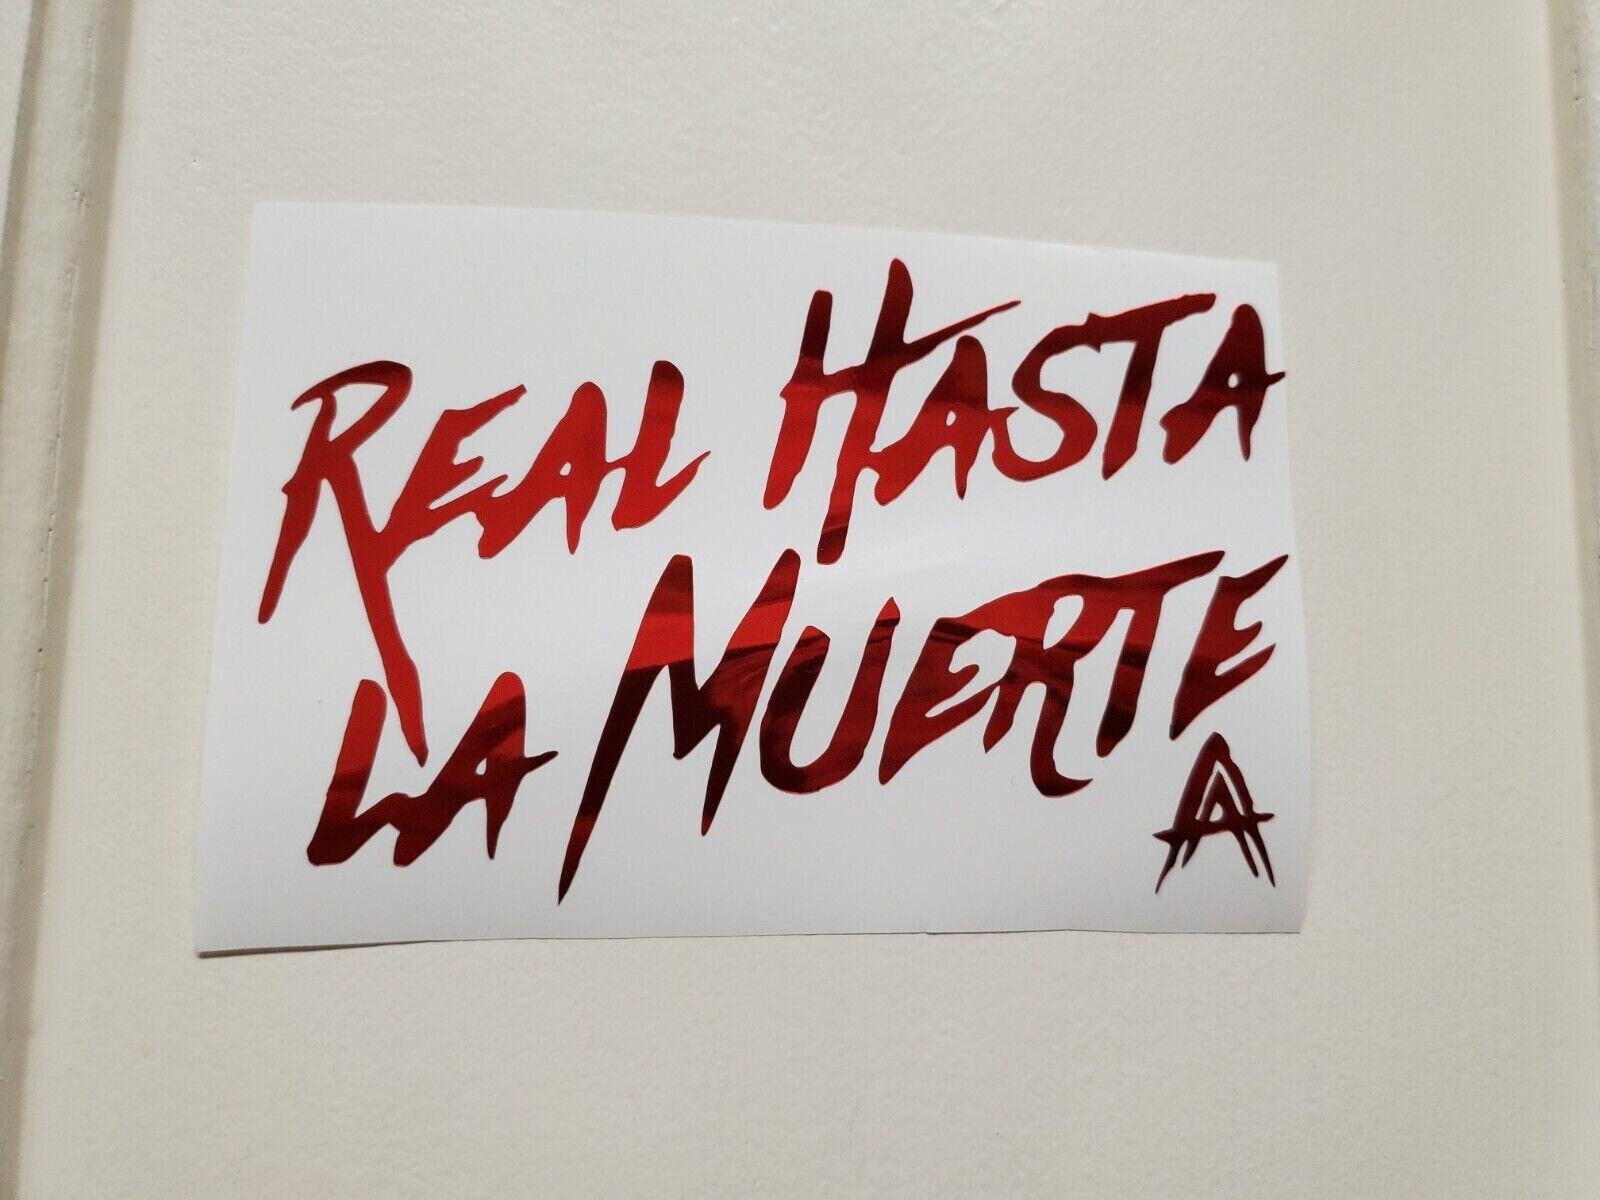 REAL HASTA LA MUERTE” (@anuel) • Instagram photos and videos